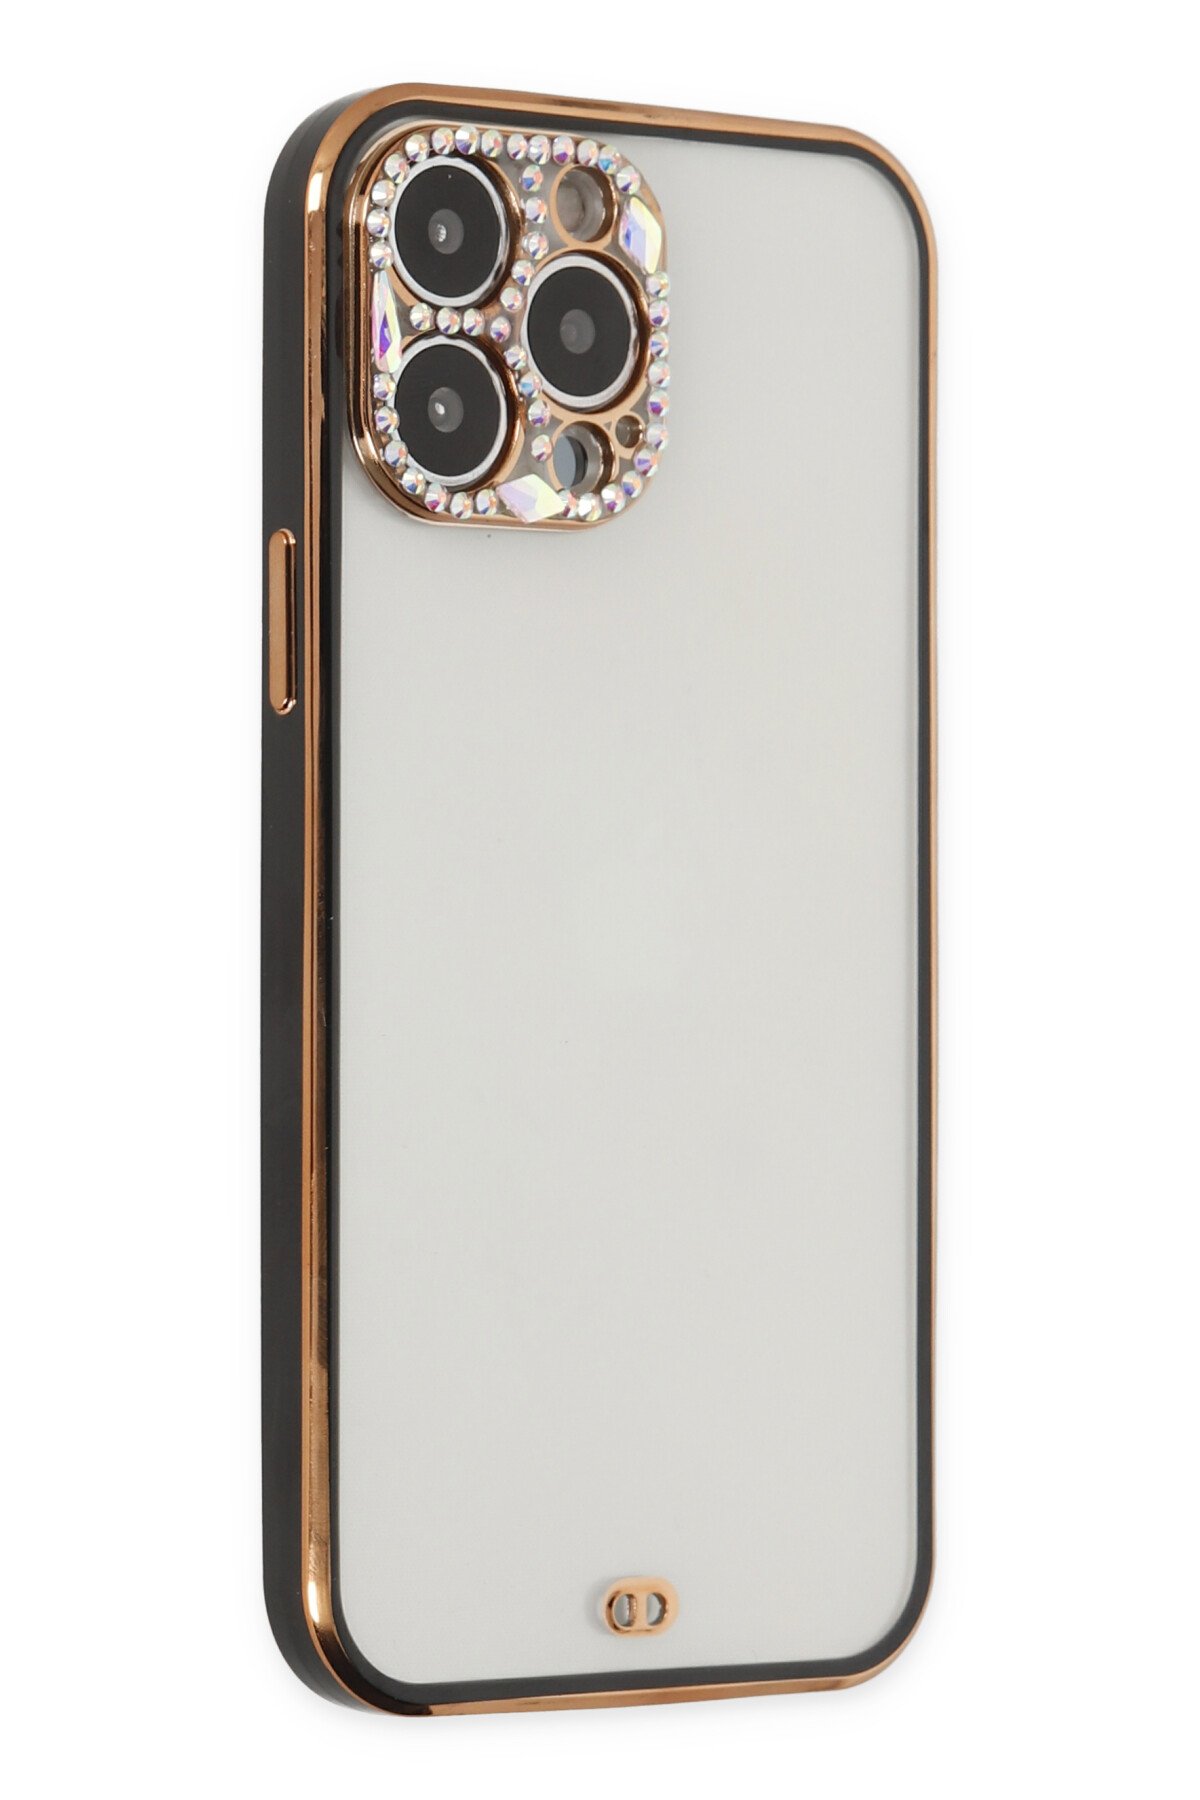 Newface iPhone 13 Pro Kılıf Miami Şeffaf Silikon  - Kırmızı